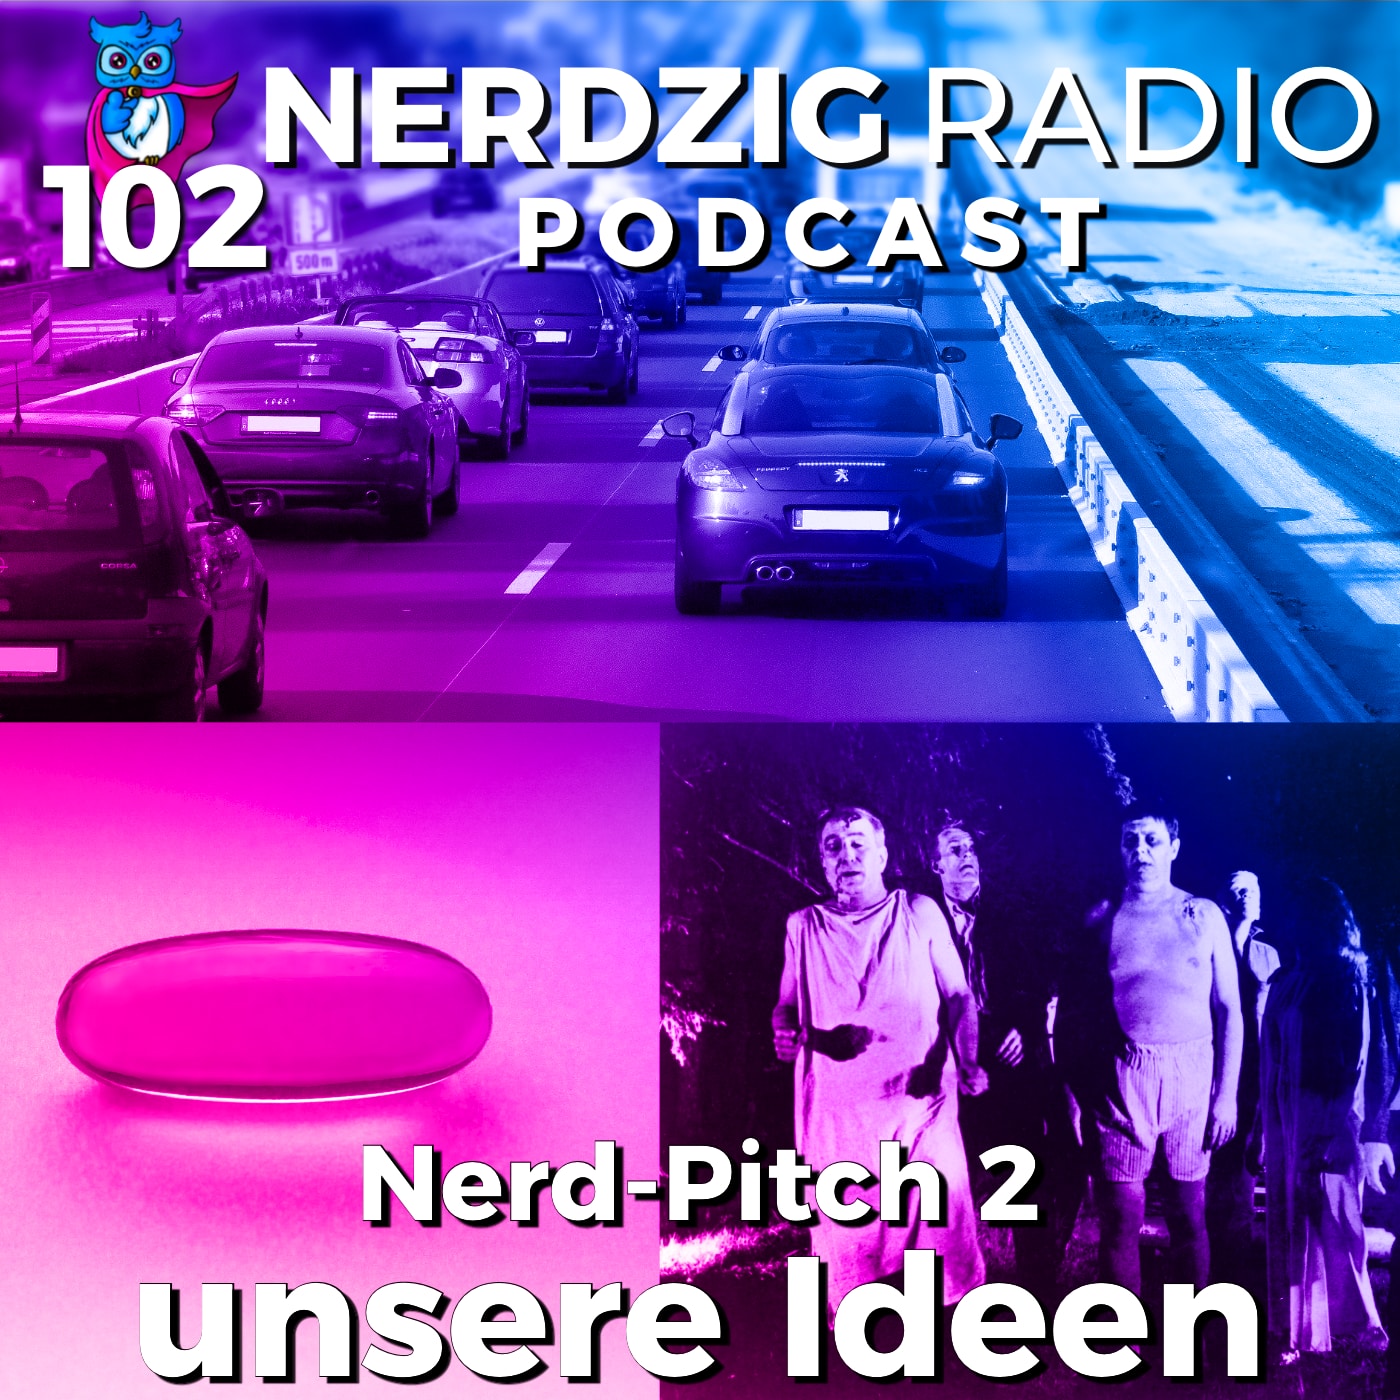 Nerdzig Radio #102 – Nerd-Pitch 2: unsere Film- und Serienideen